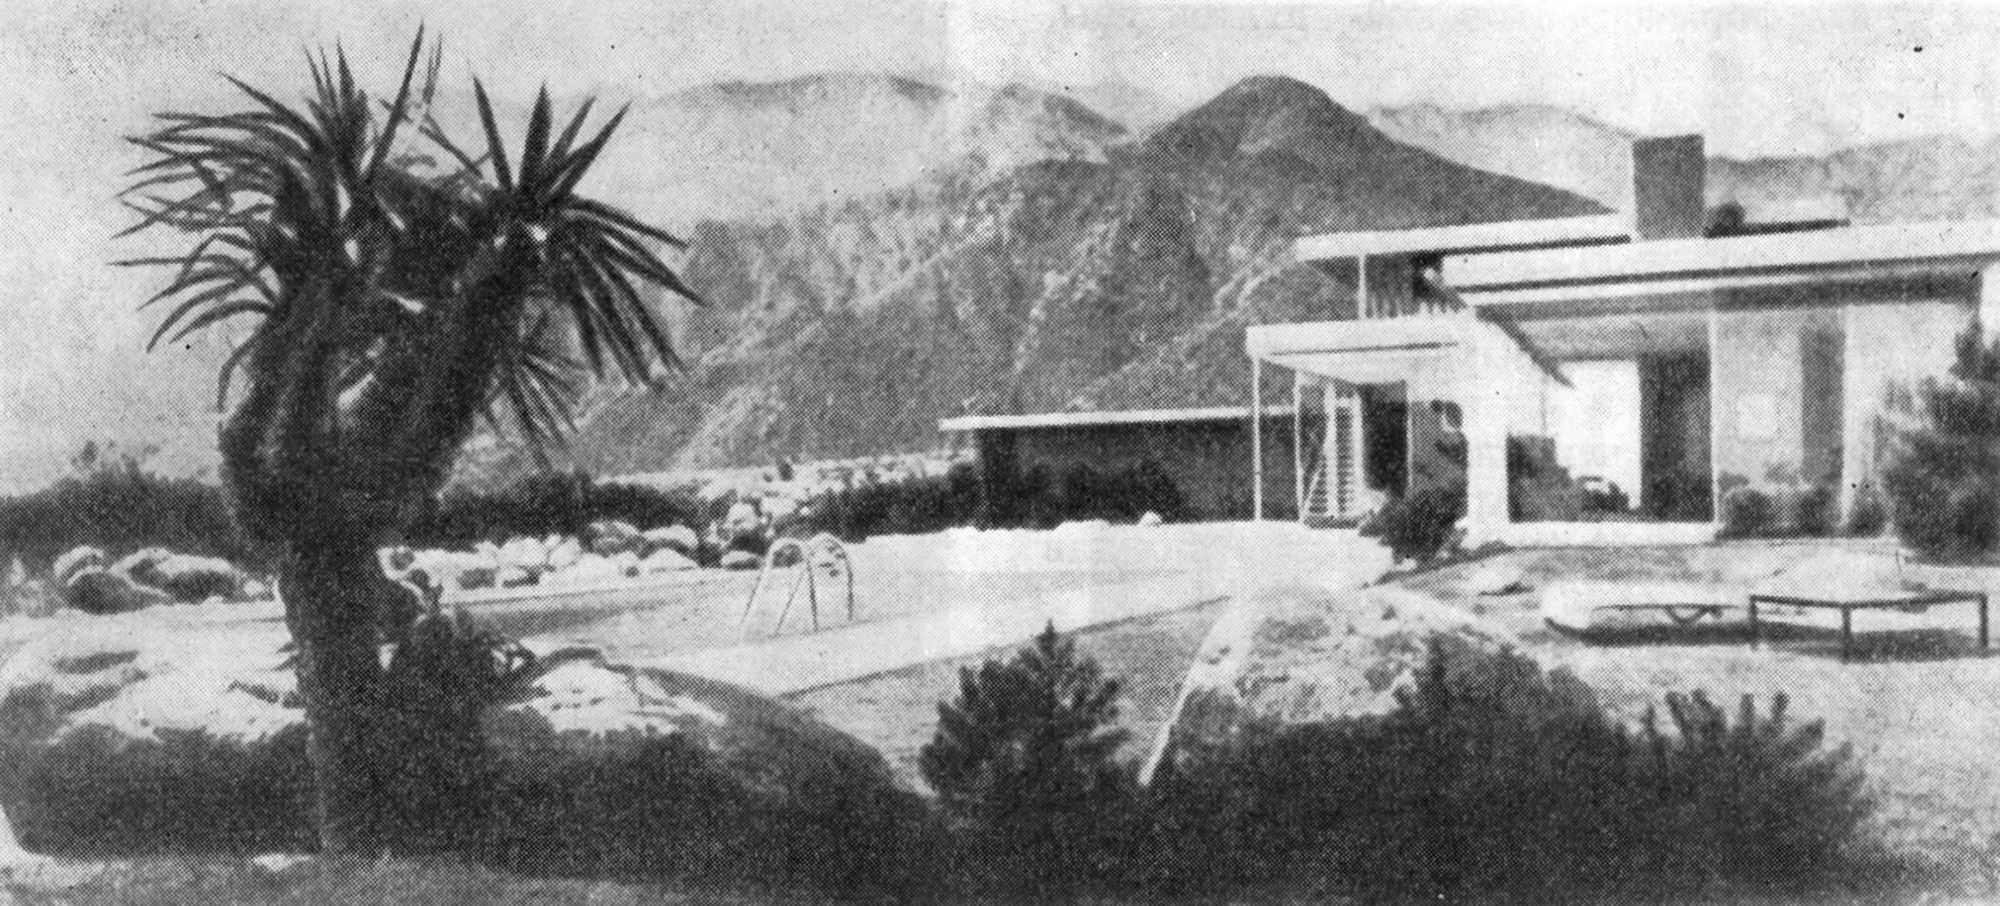 37. Палм-Спрингс (Калифорния). «Дом в пустыне», 1946 г. Арх. Р. Нейтра. Фрагменты